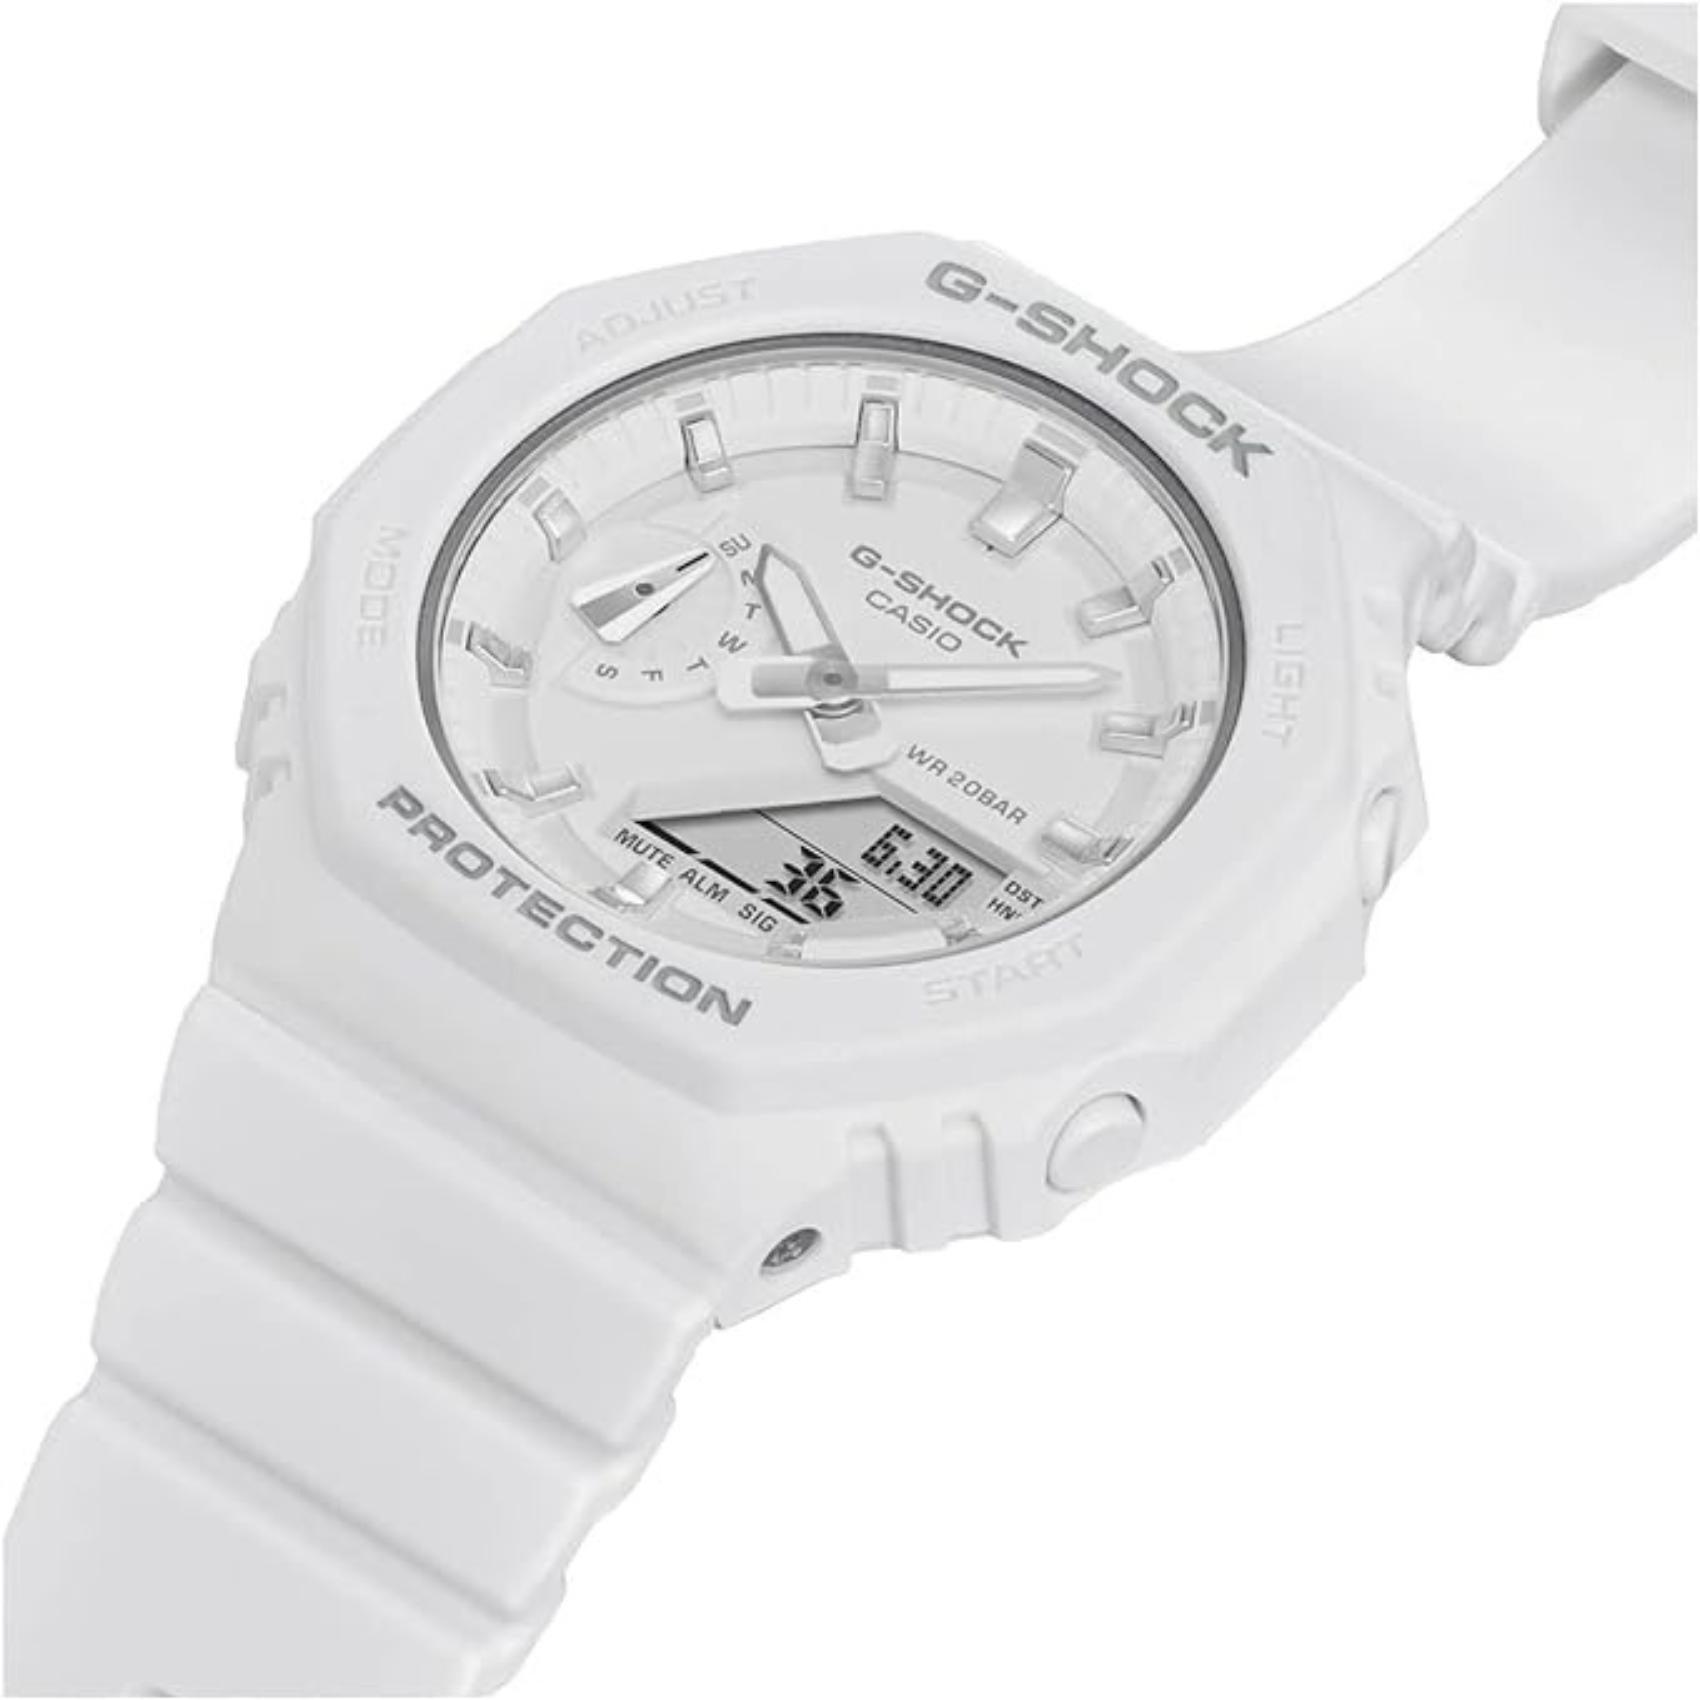 Ρολόι χρονογράφος Casio G-Shock GMA-S2100-7AER με λευκό καουτσούκ λουράκι, λευκό καντράν σε οκτάγωνο σχημα με ψηφιακή ένδειξη και στεγανότητα 20ATM-200Μ.